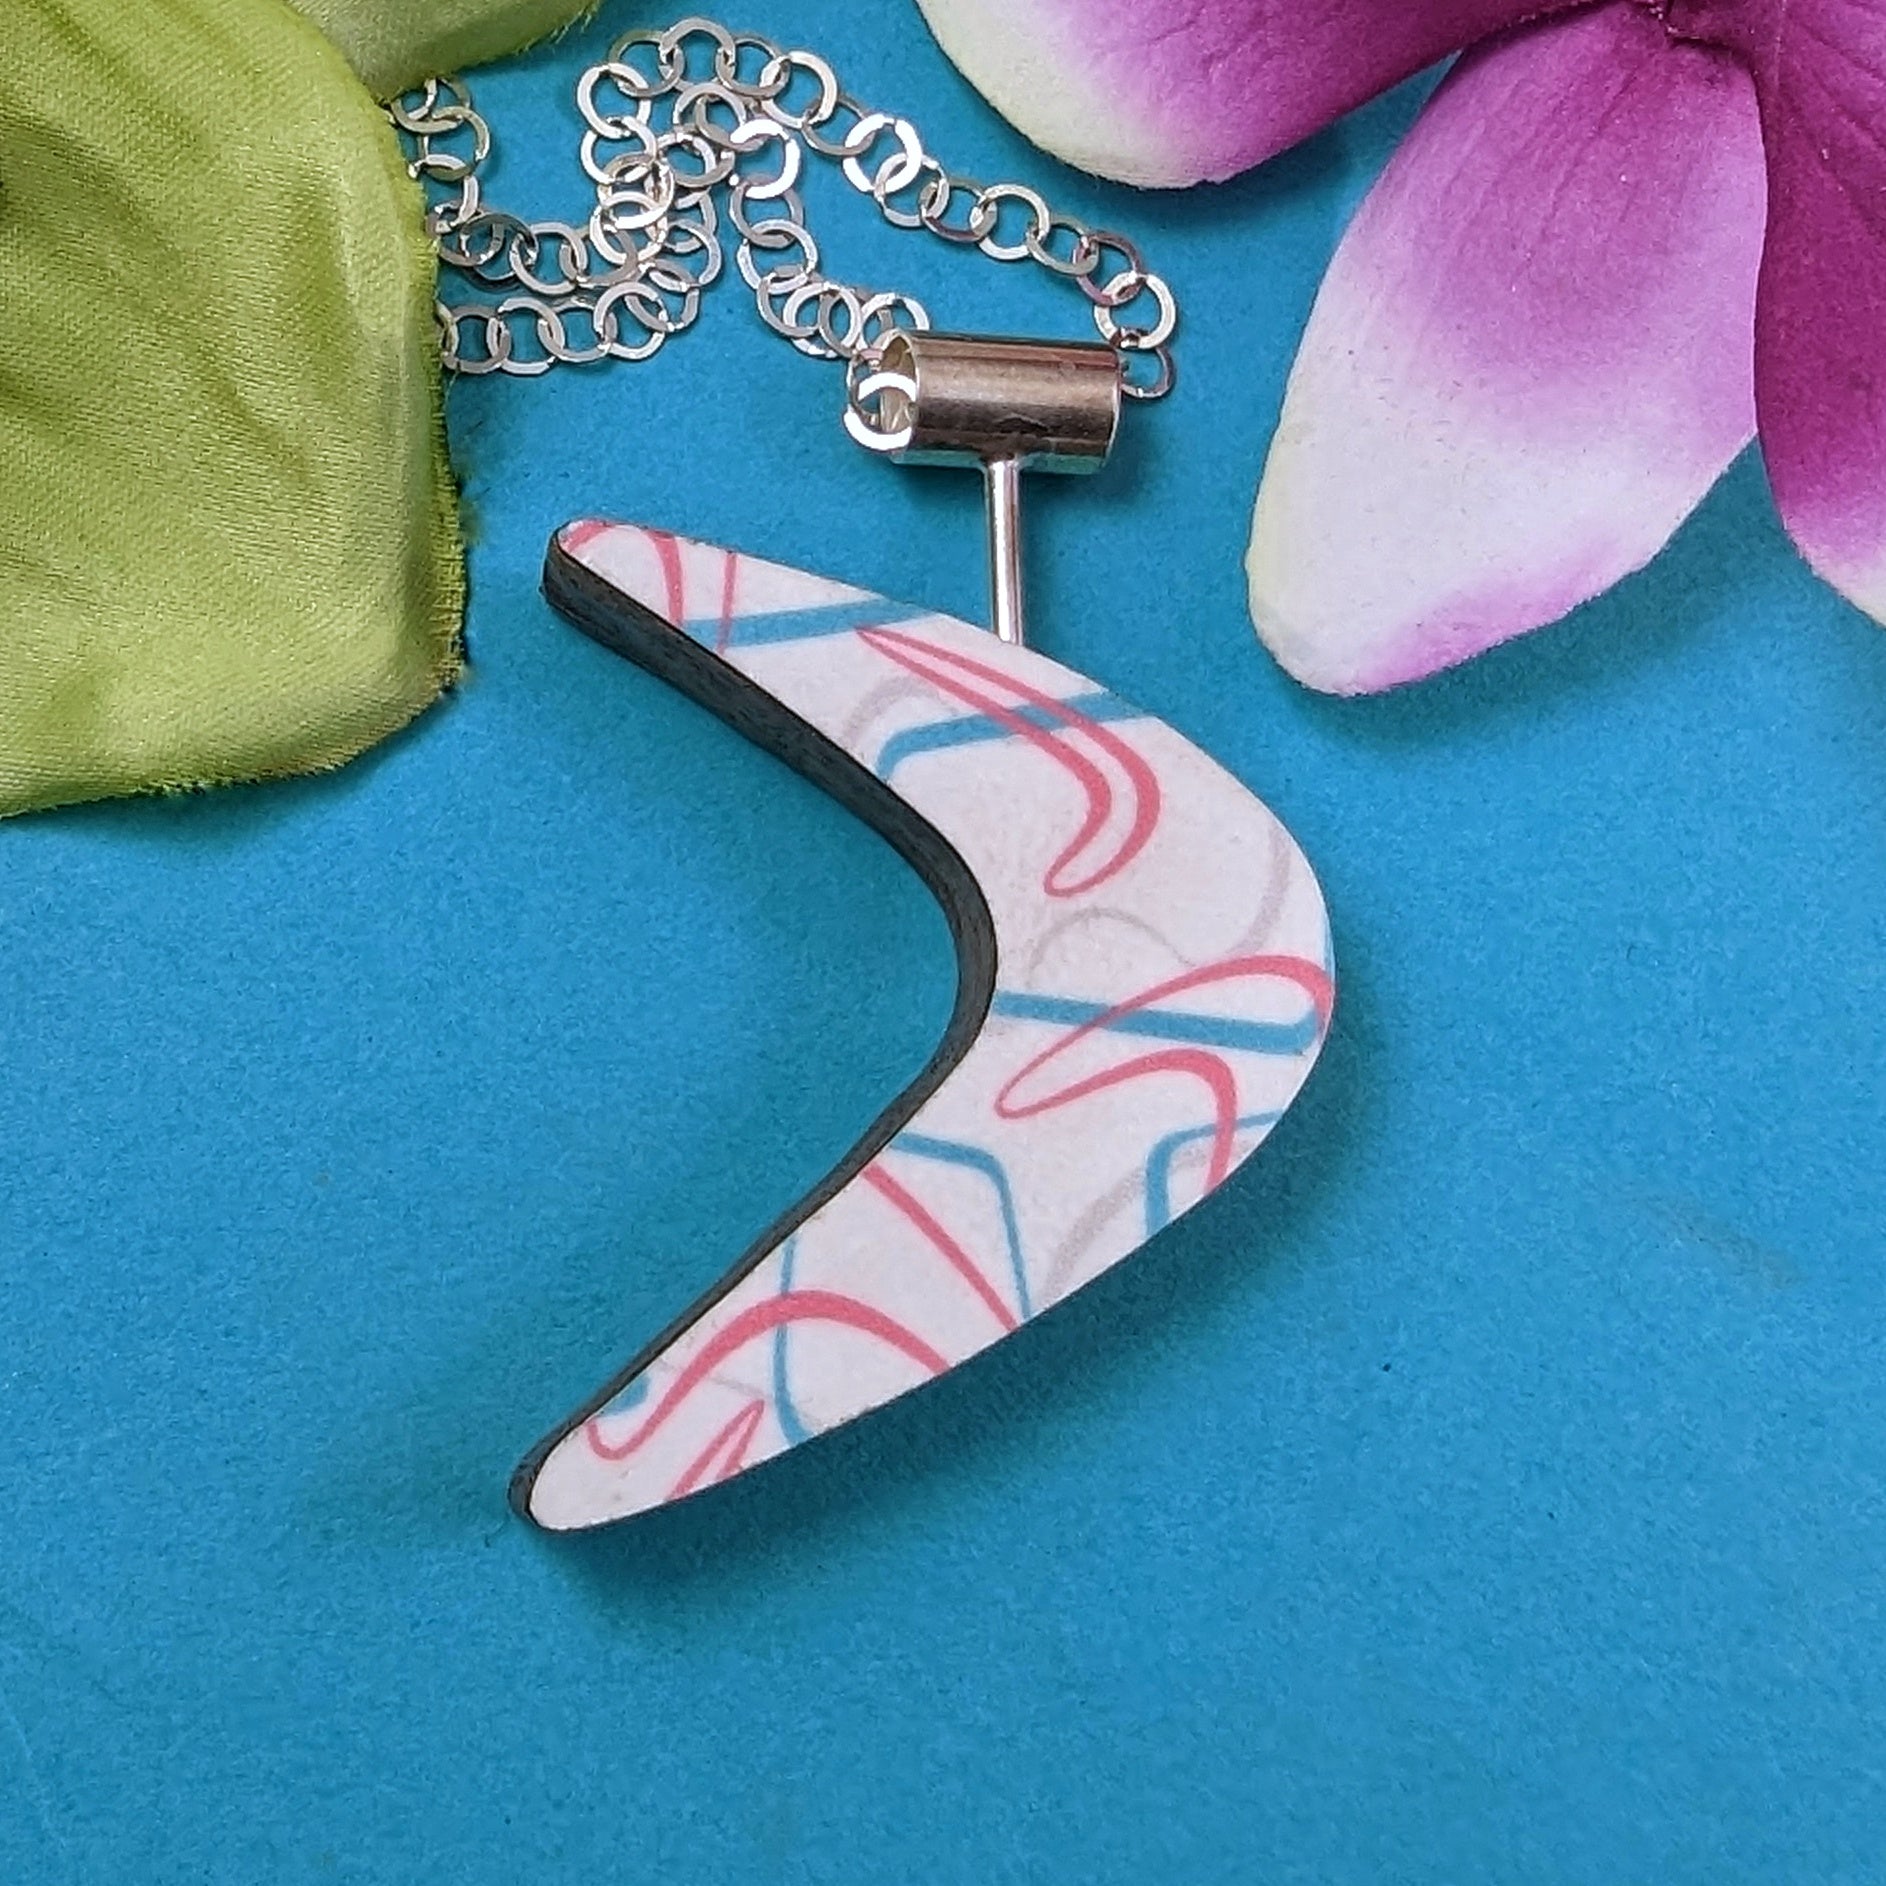 Boomerang shaped laminate on wood necklace on turquoise background